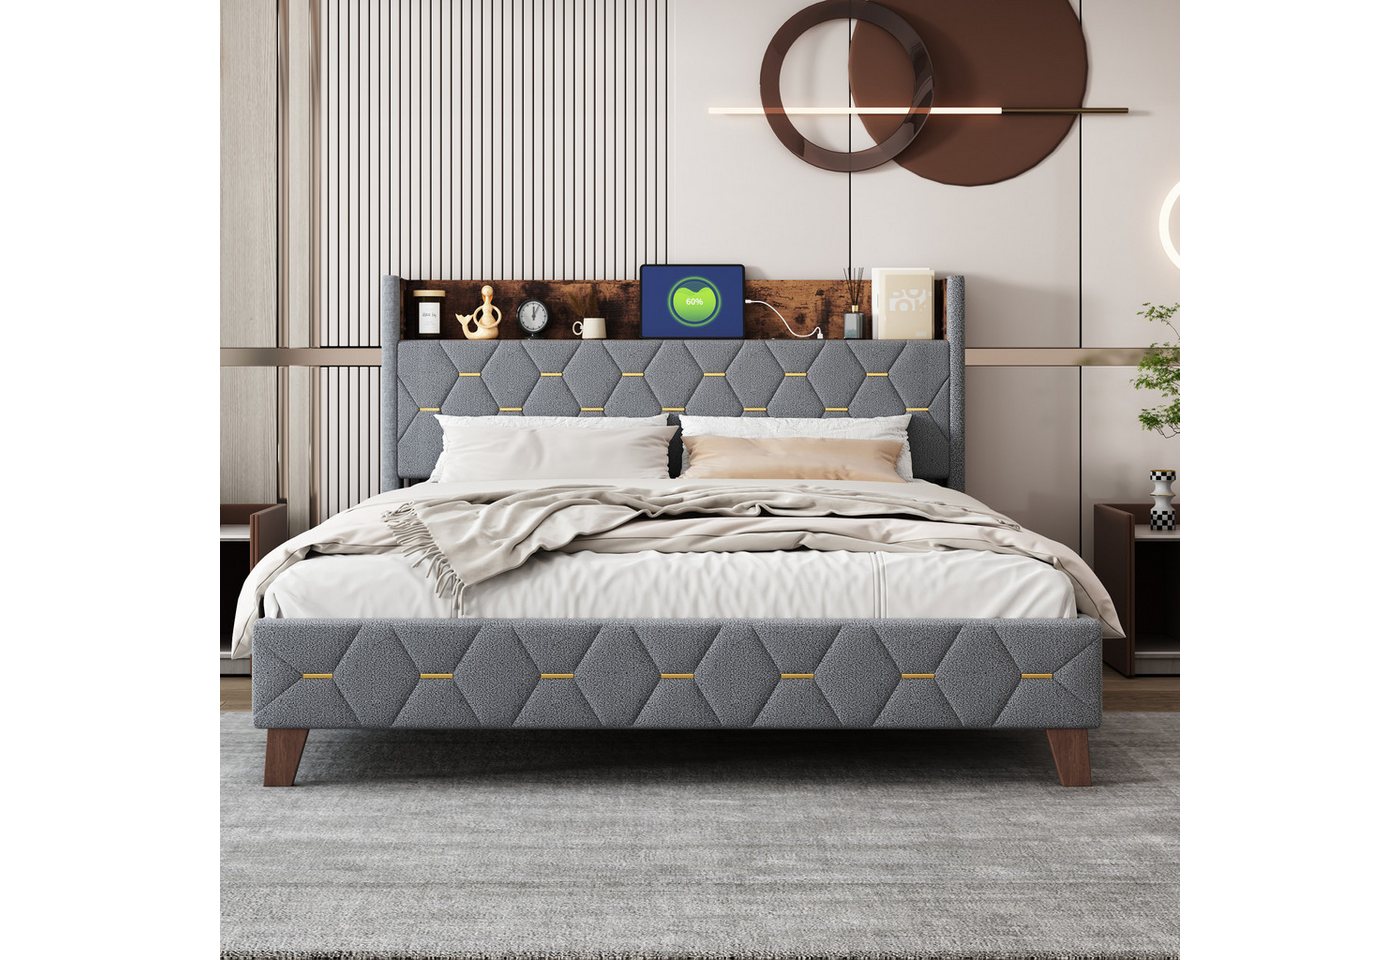 IDEASY Polsterbett Doppelbett, Queen-Size-Bett, 160 x 200 cm, (Stauraum am Kopfteil, mit USB-Anschluss, hautfreundlicher Samt), grau/beige, keine Boxspringbetten erforderlich von IDEASY